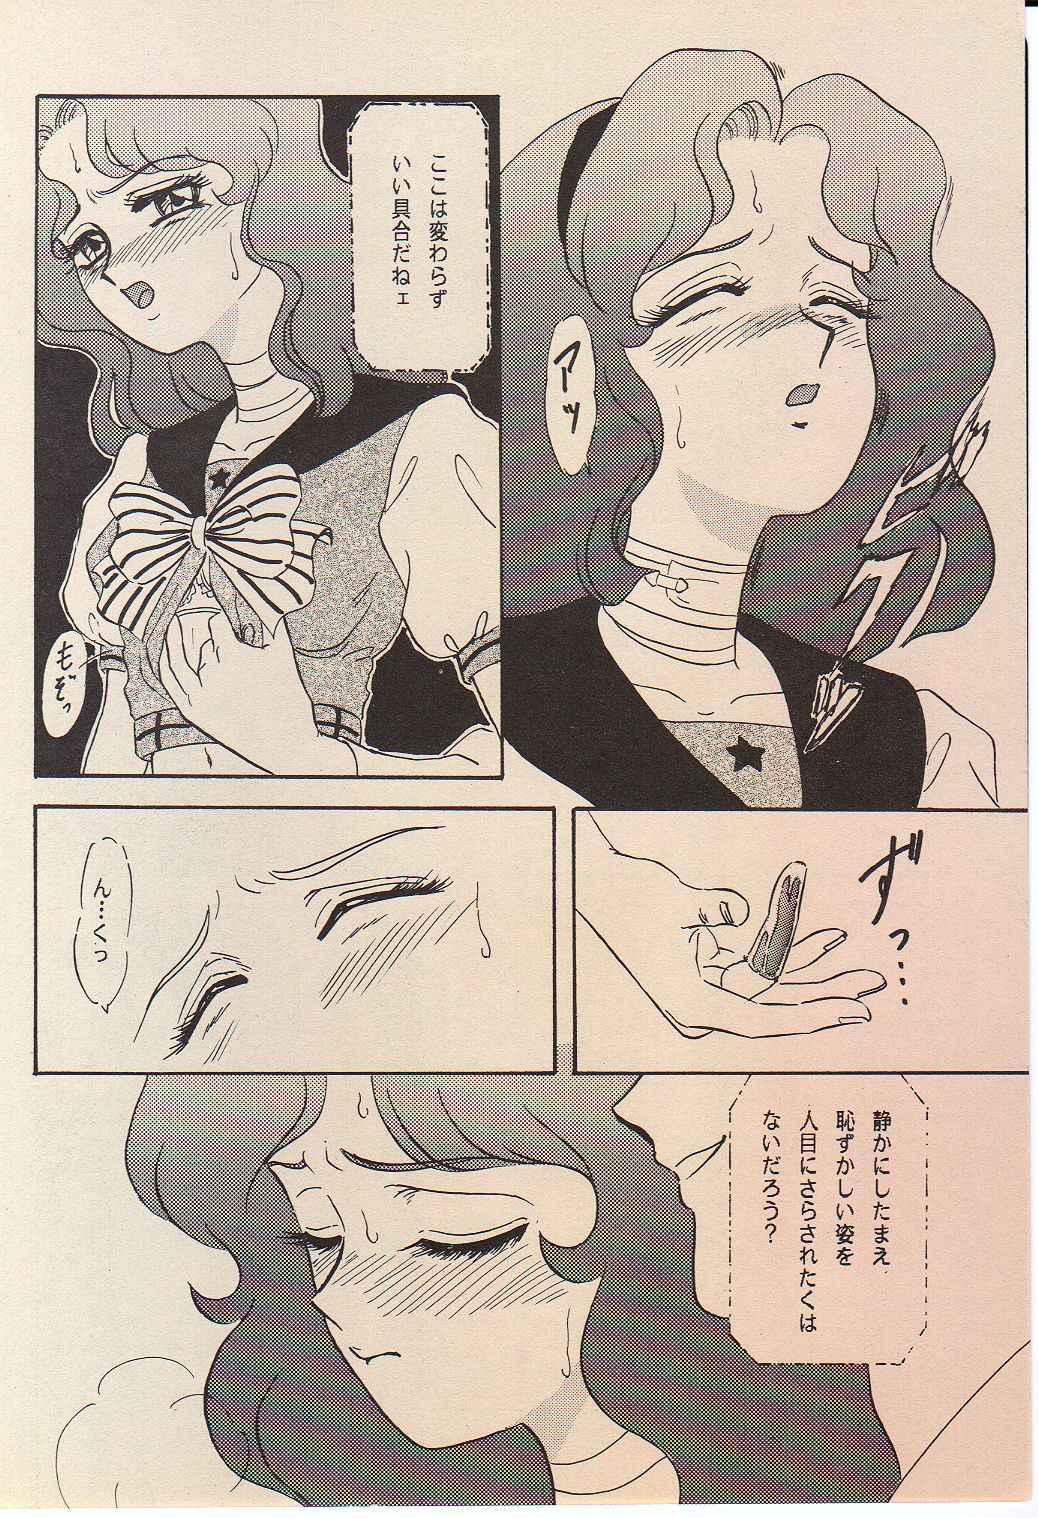 Mmf Lunch Box 11 - Twinkle Twinkle - Sailor moon Bunda Grande - Page 11